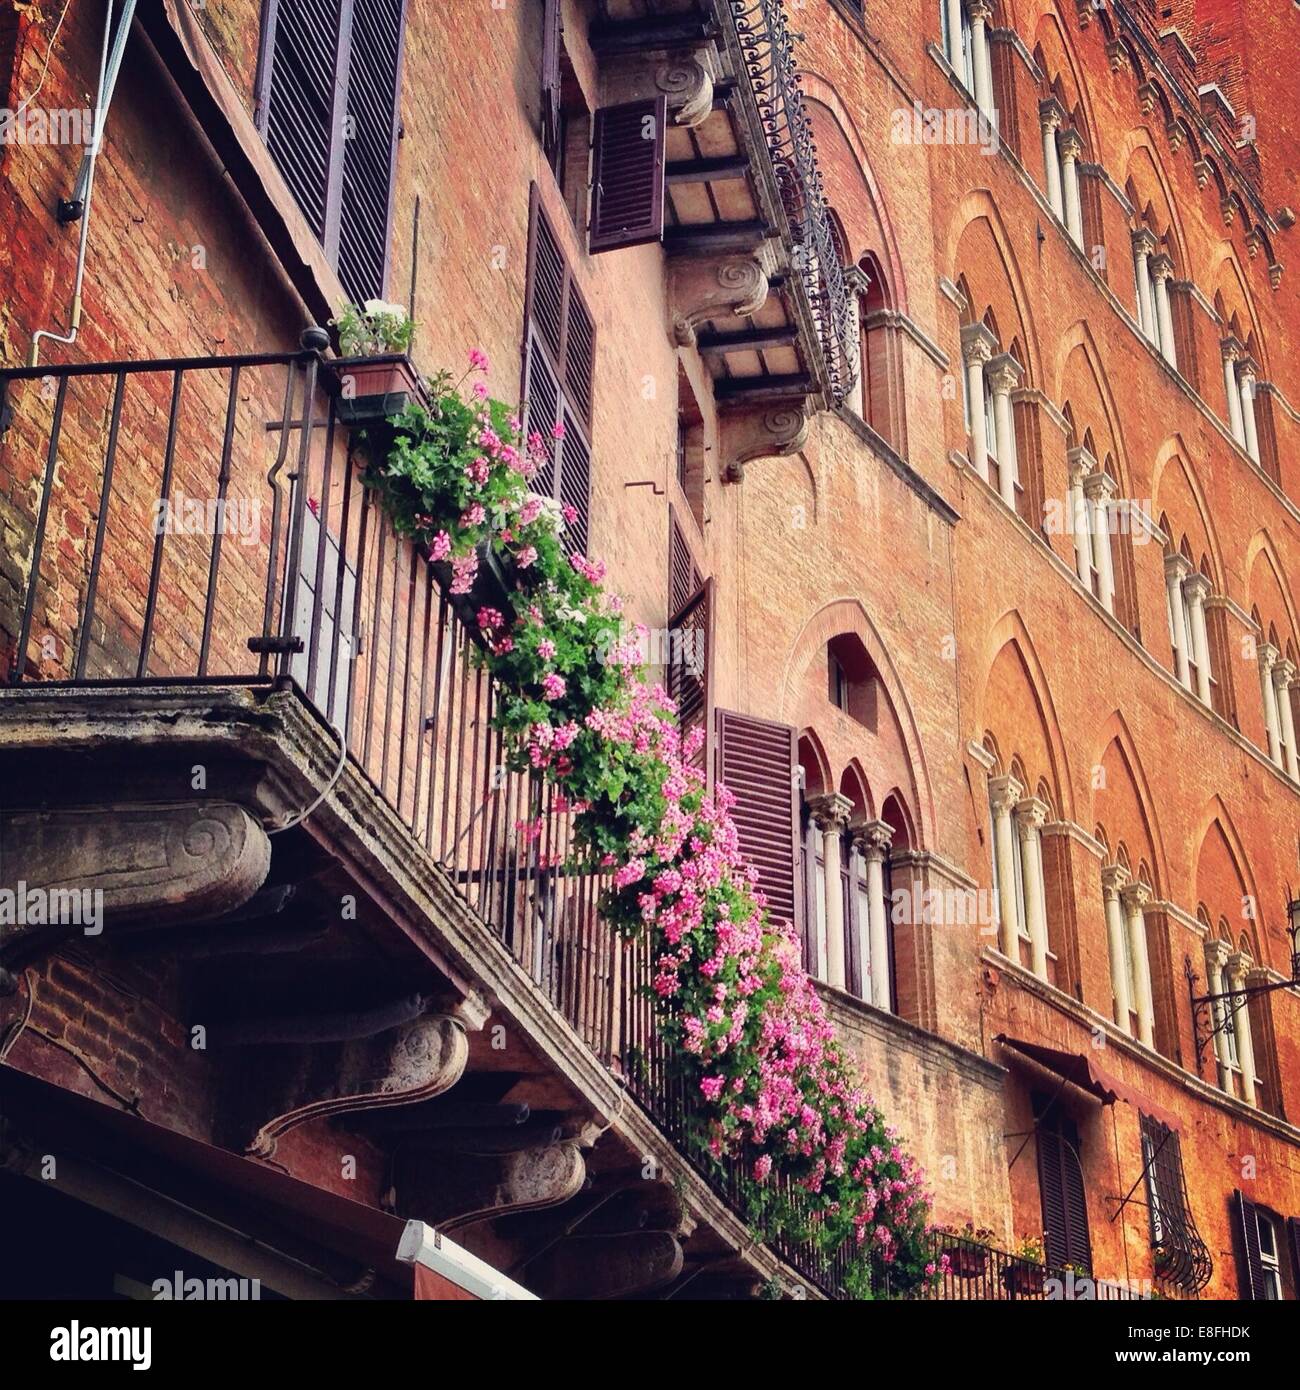 Italy, Tuscany, Balcony flowers in Tuscany Stock Photo